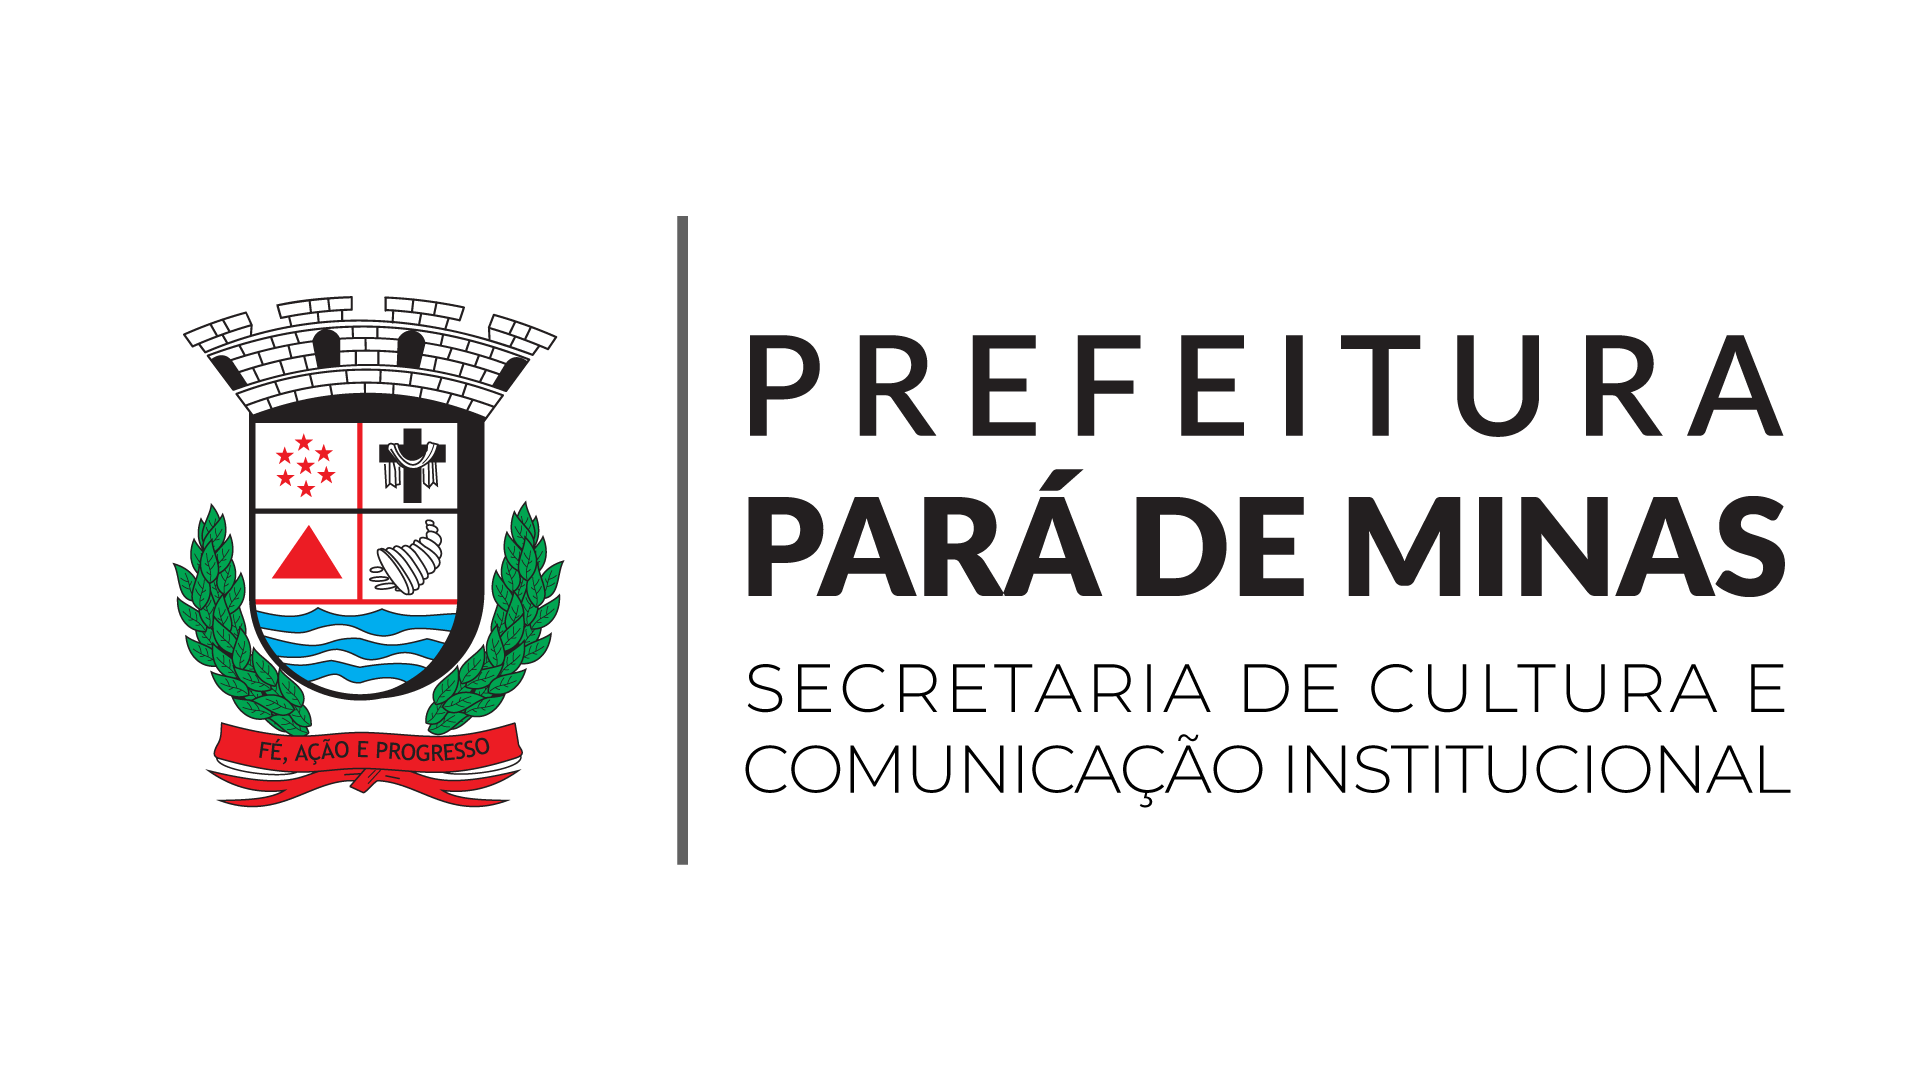 app-home/api-modulos/secretarias/img/25/73/brasão+secretaria_secultcom.png